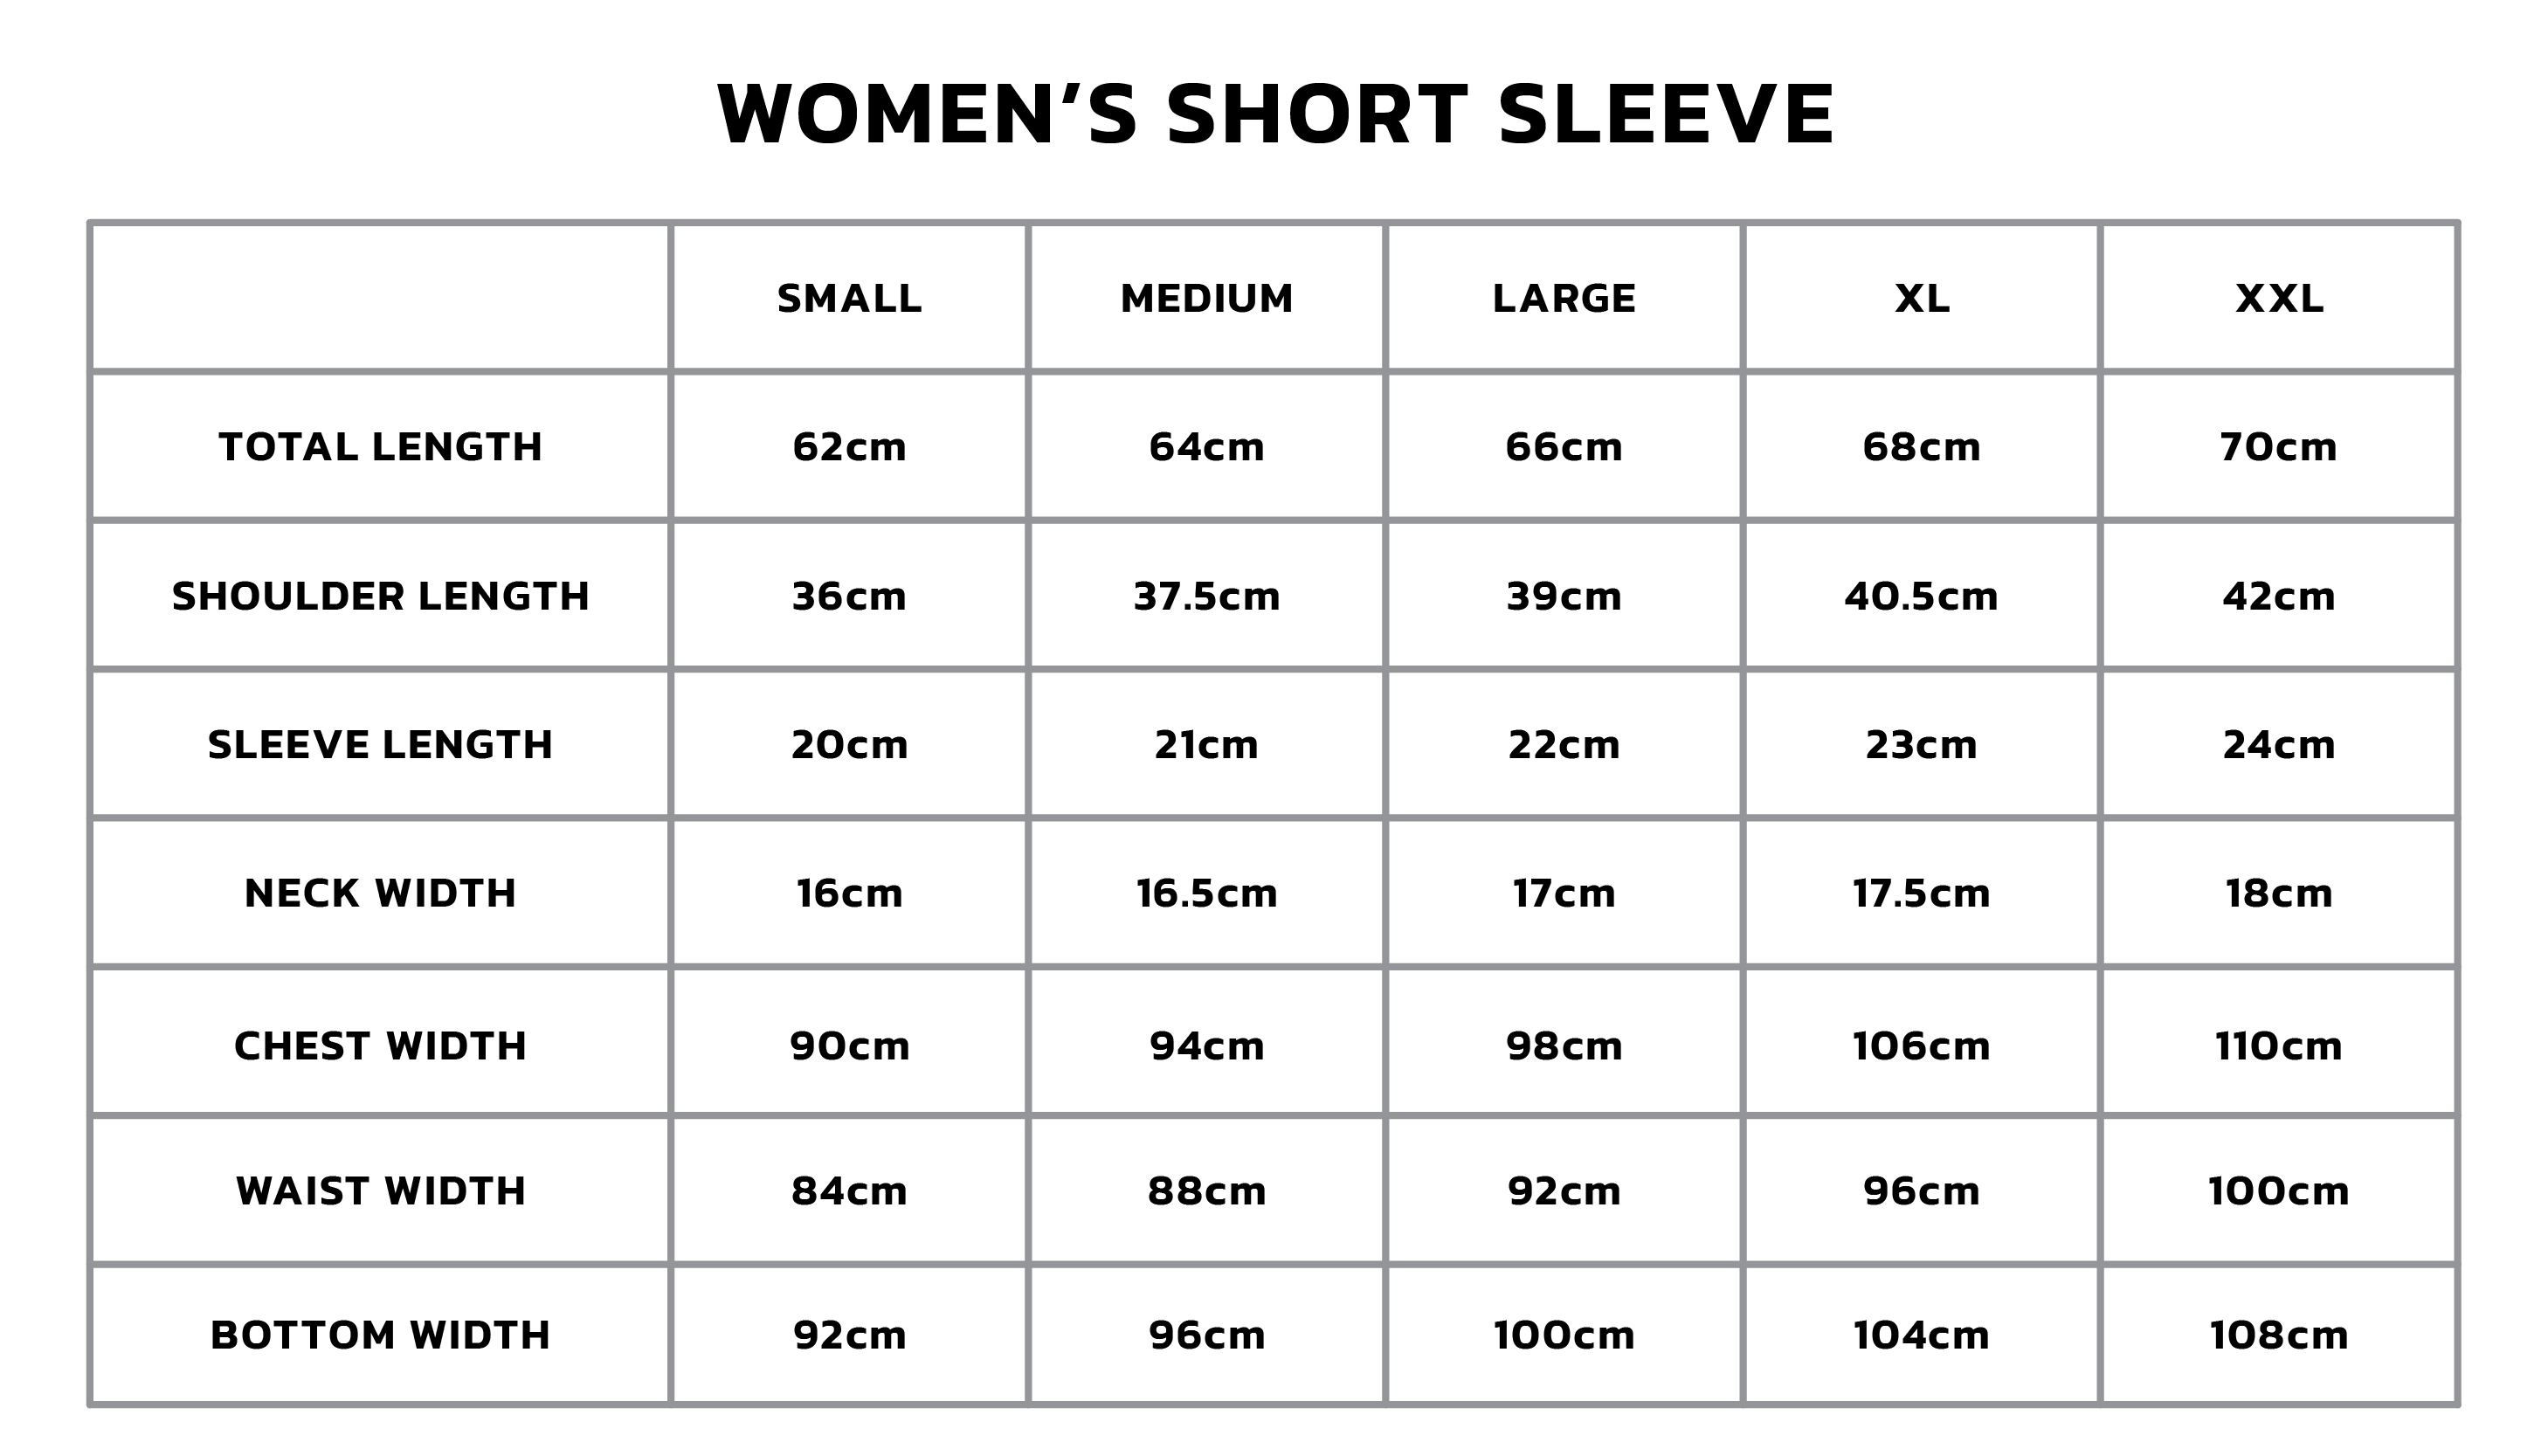 Women's Short Sleeve Size Chart